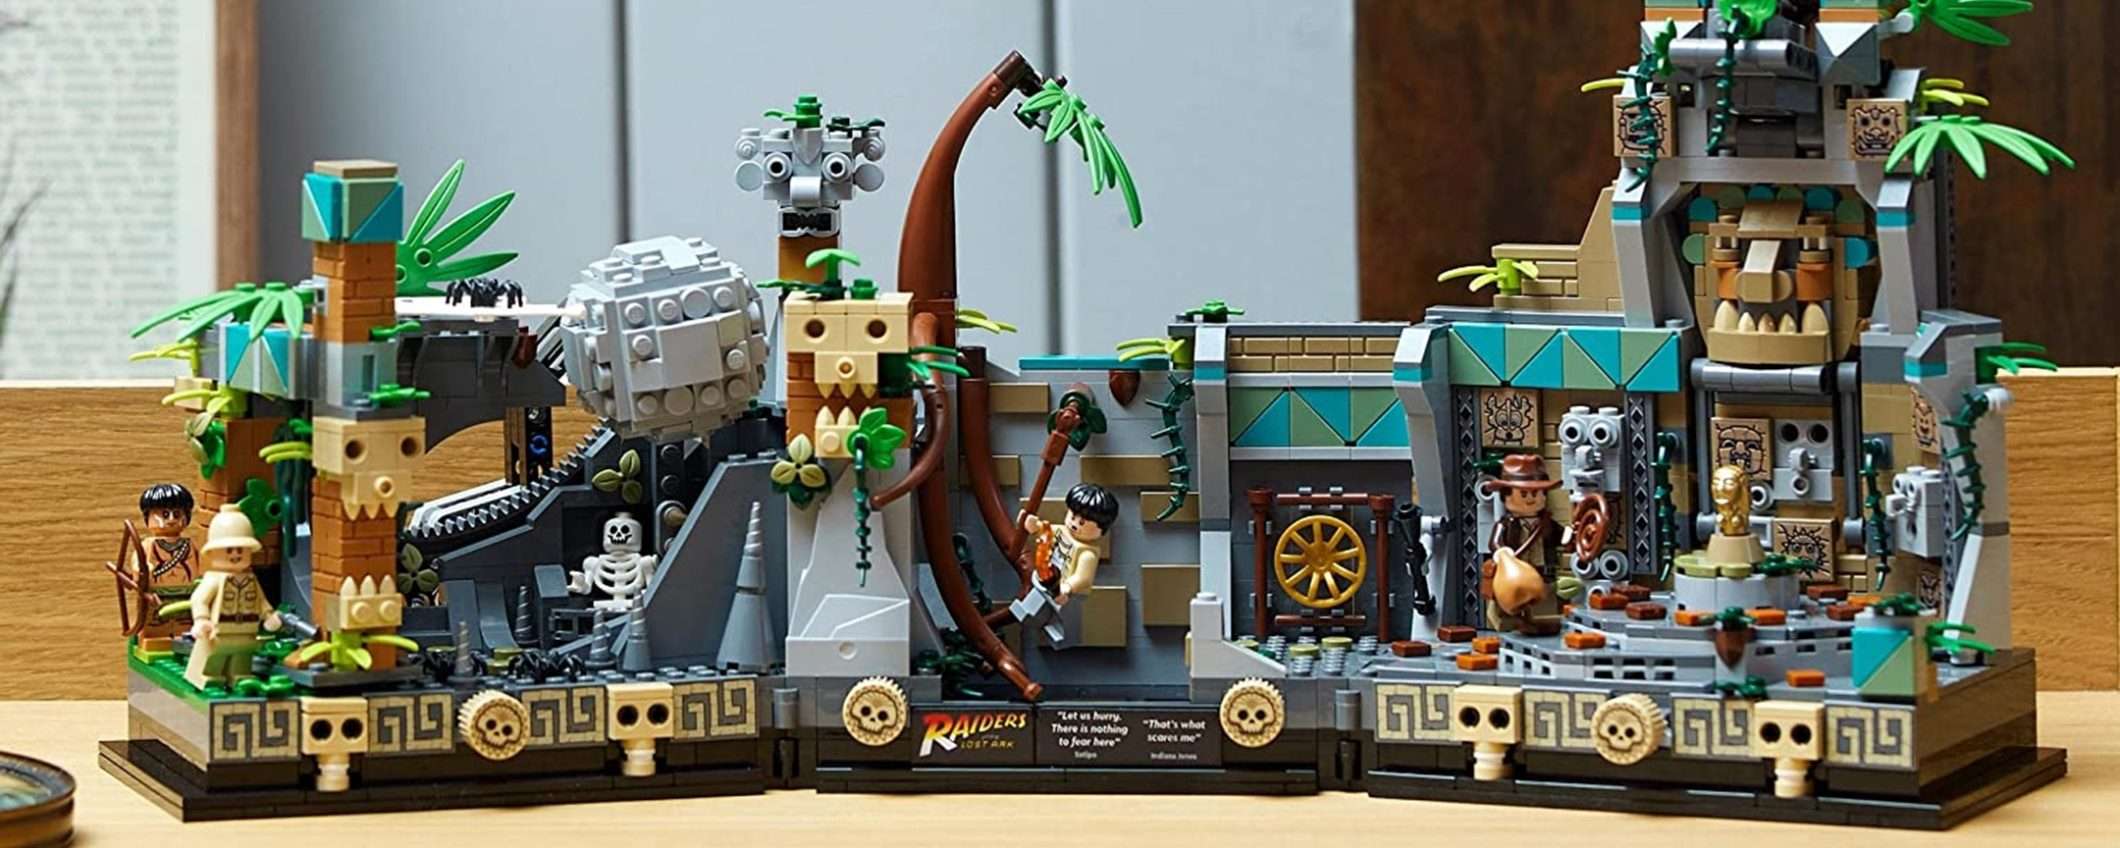 Lego Indiana Jones Il Tempio dell'Idolo d'Oro: su Amazon solo per i veri fan a un prezzo WOW